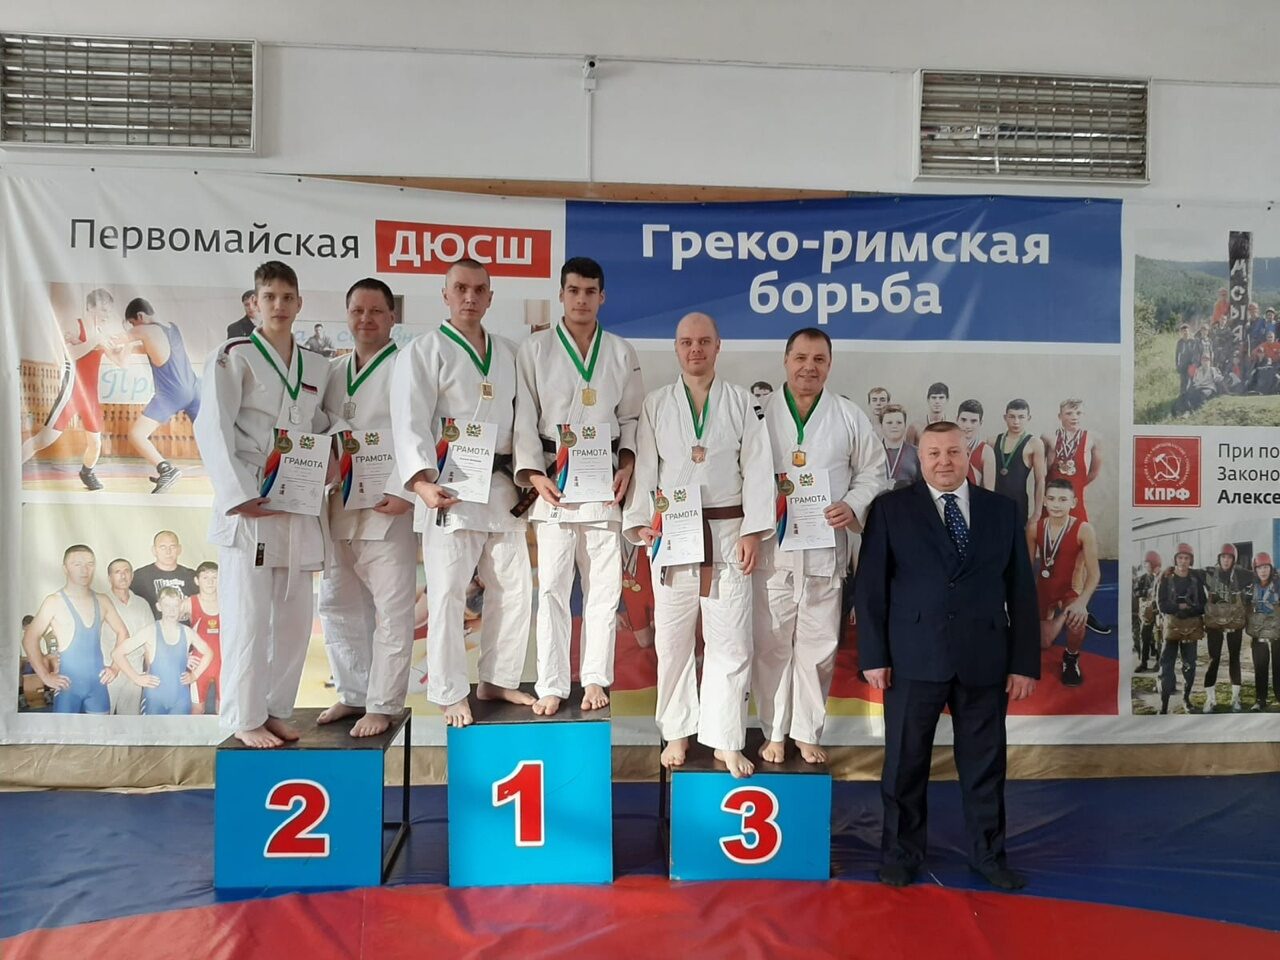 22 января в c.Первомайское состоялся Чемпионат Томской области по дзюдо (ката)